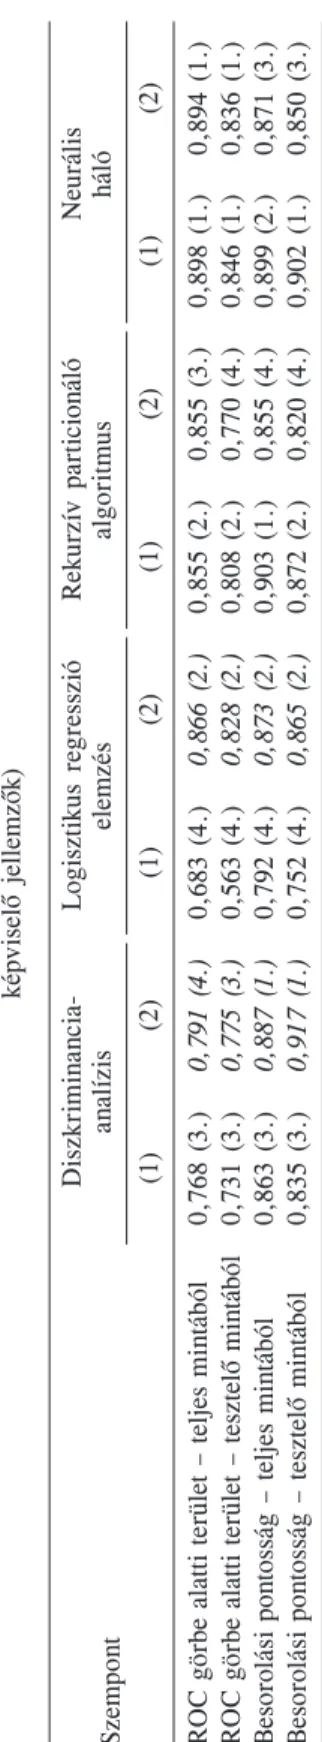 7. táblázat  A csõdmodellek teljesítményének összehasonlító értékelése (zárójelben a sorrend, dõlt számmal kiemelve a fõkomponens-elemzés javító hatását  képviselõ jellemzõk)  Neurális  háló  0,898 (1.)  0,846 (1.)  0,899 (2.)  0,902 (1.) (1) 0,855 (3.) 0,